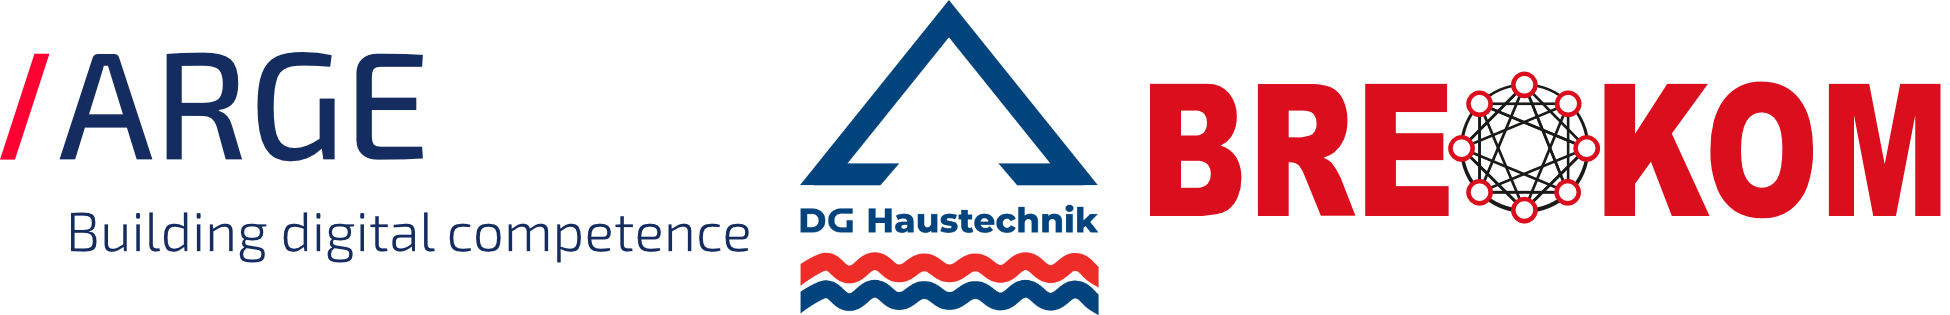 SHK-Mail Logo - Kommunikationssystem für die Haustechnik-Branche